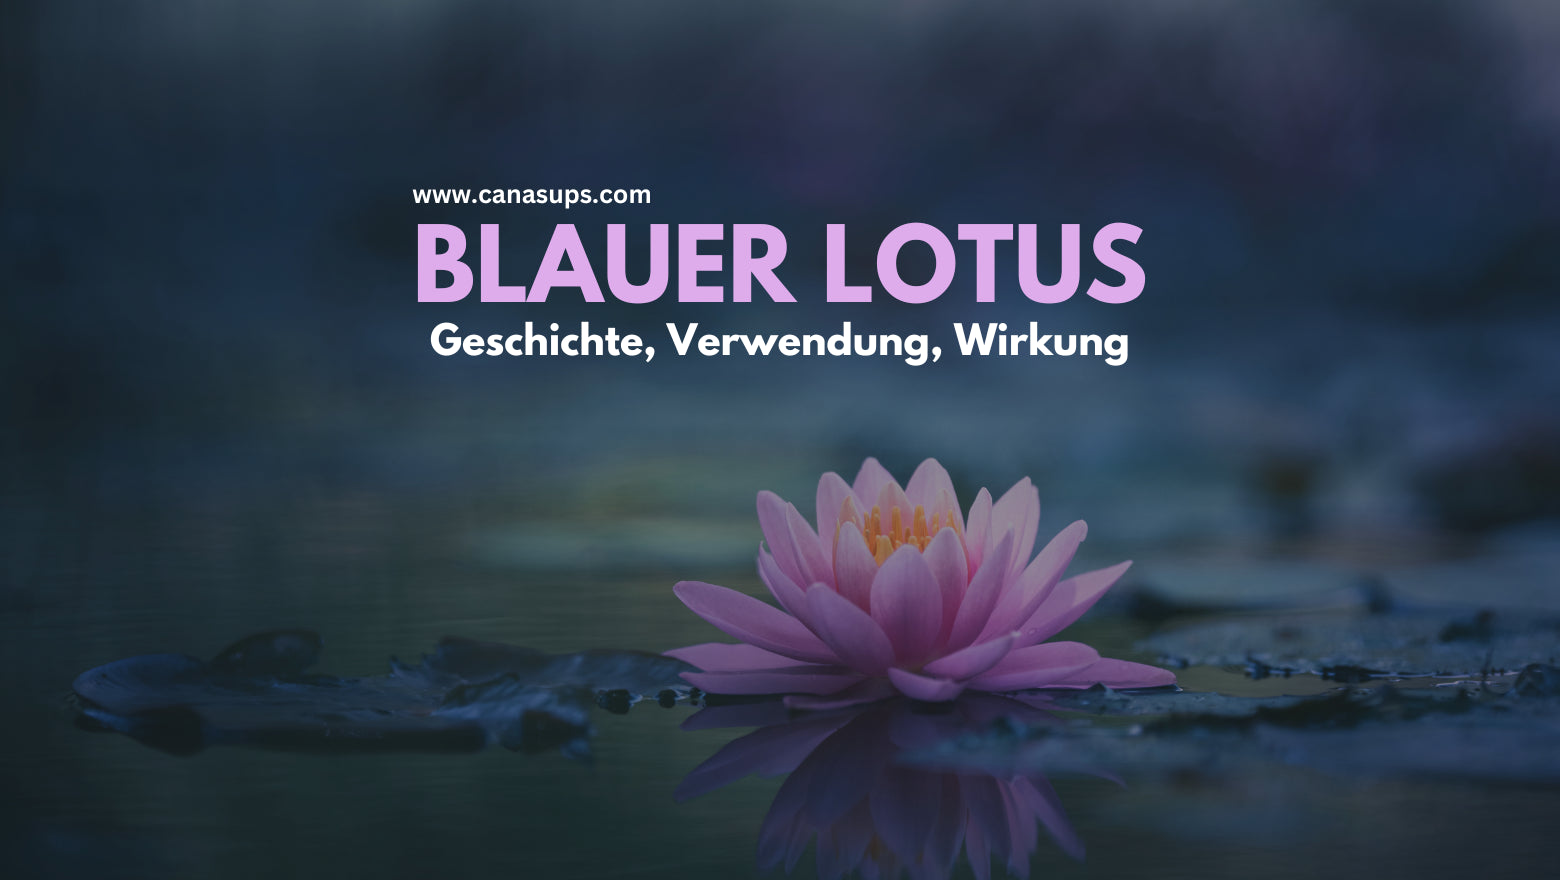 Blauer Lotus - Alles über Geschichte, Verwendung und Wirkung